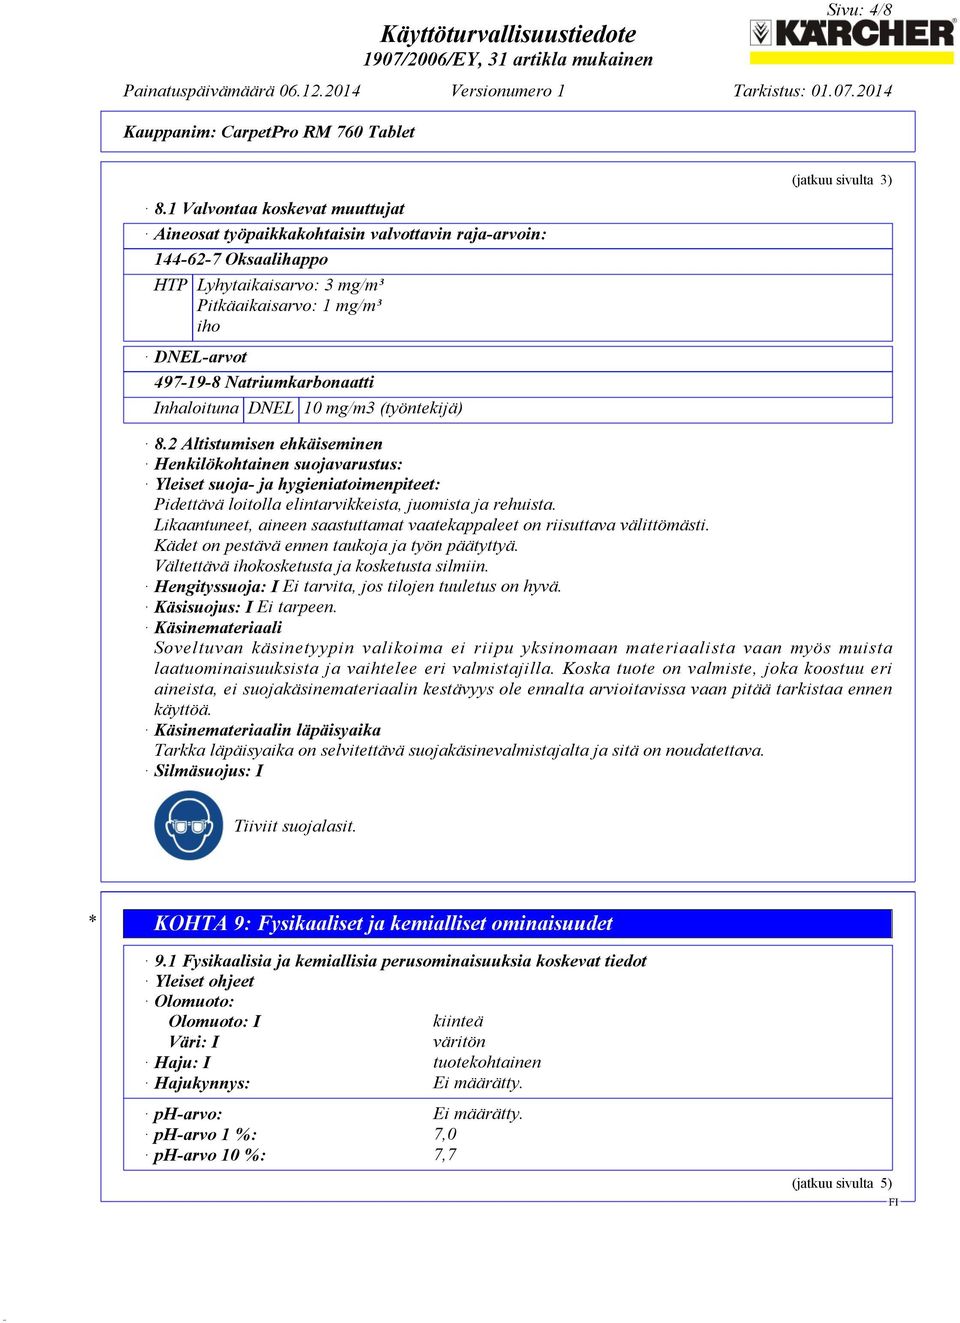 Natriumkarbonaatti Inhaloituna DNEL 10 mg/m3 (työntekijä) (jatkuu sivulta 3) 8.